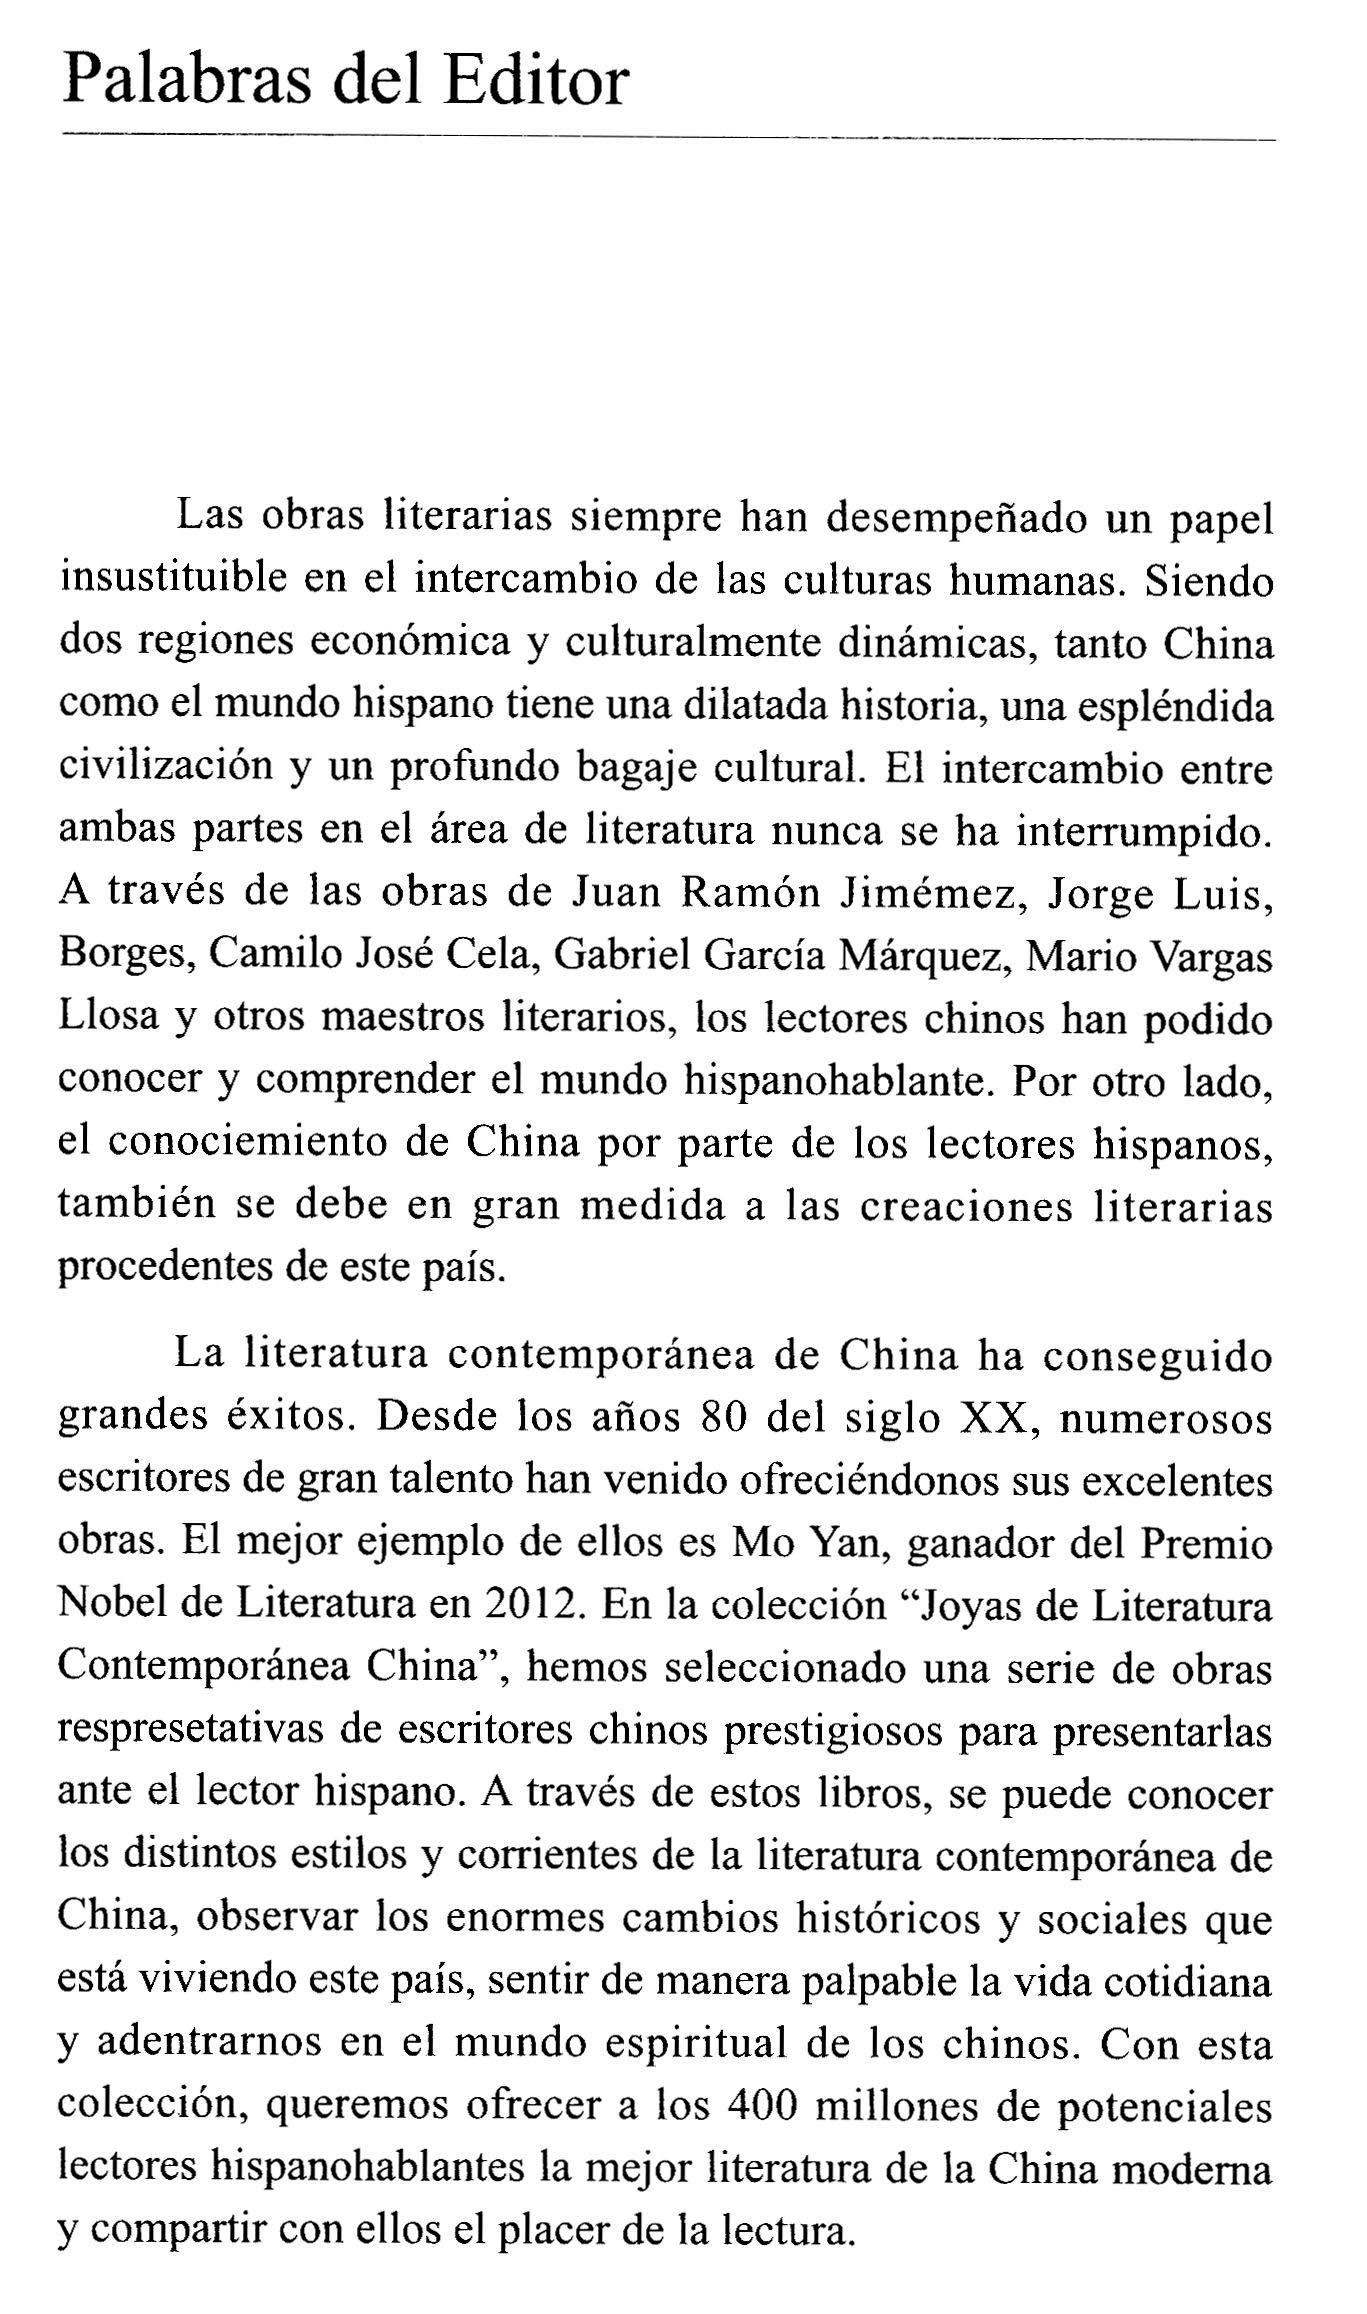 中国当代文学精选:中国当代短篇小说集(西班牙文)